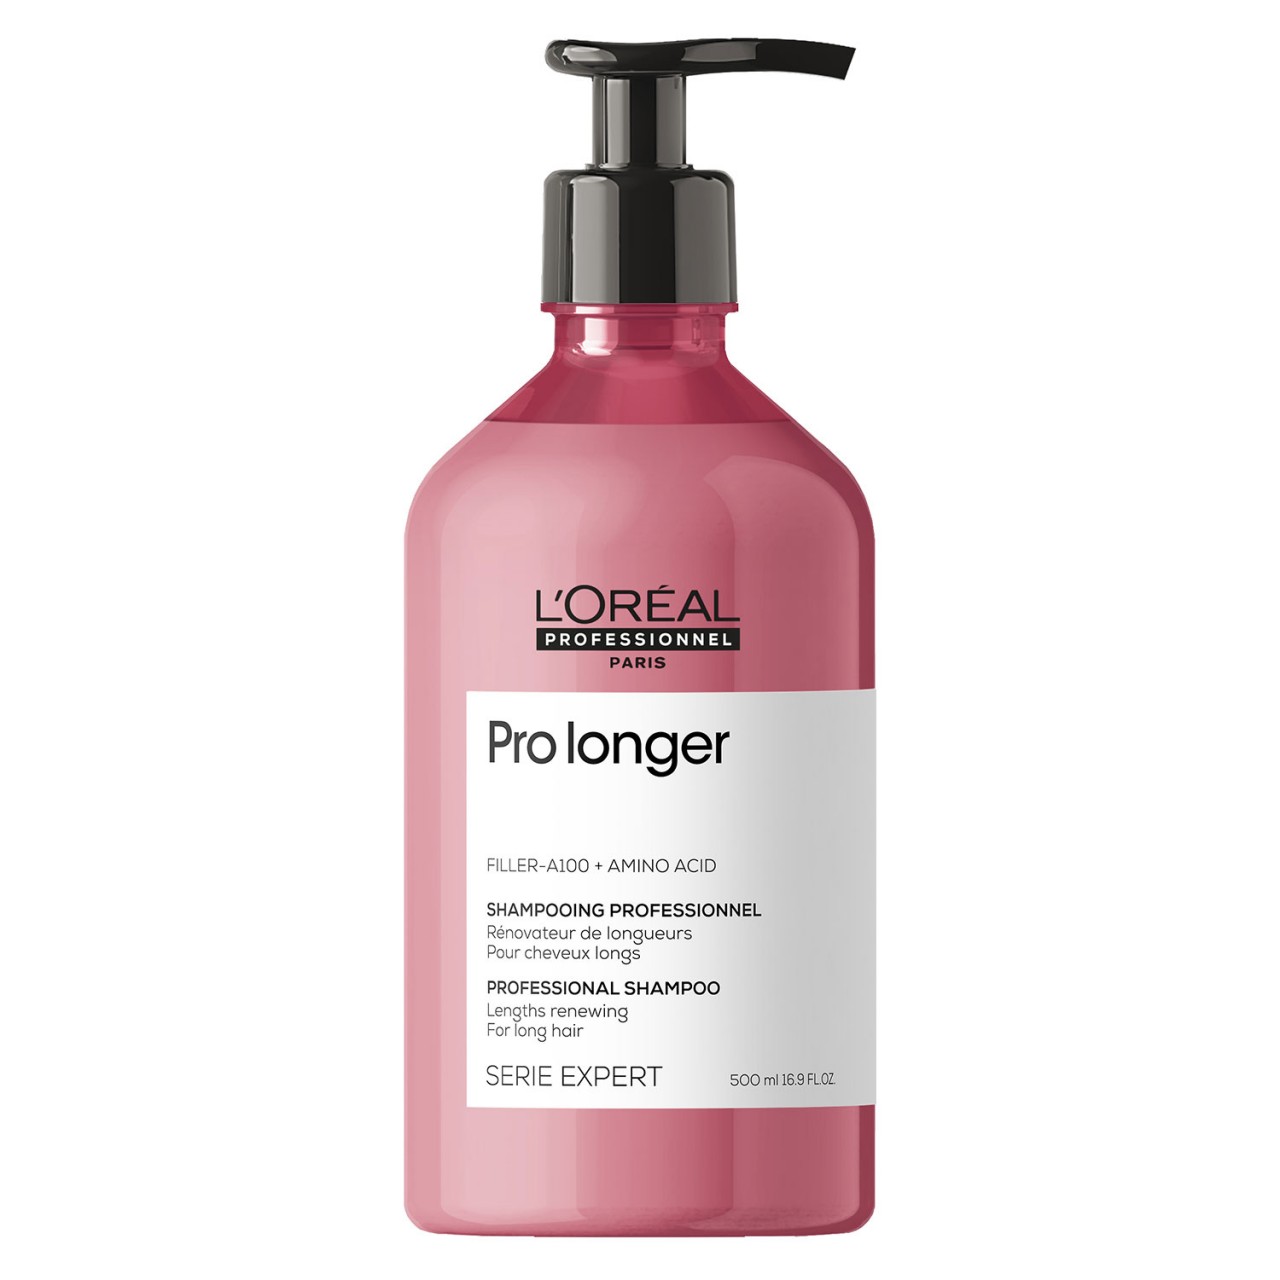 Série Expert Pro Longer - Professional Shampoo von L'Oréal Professionnel